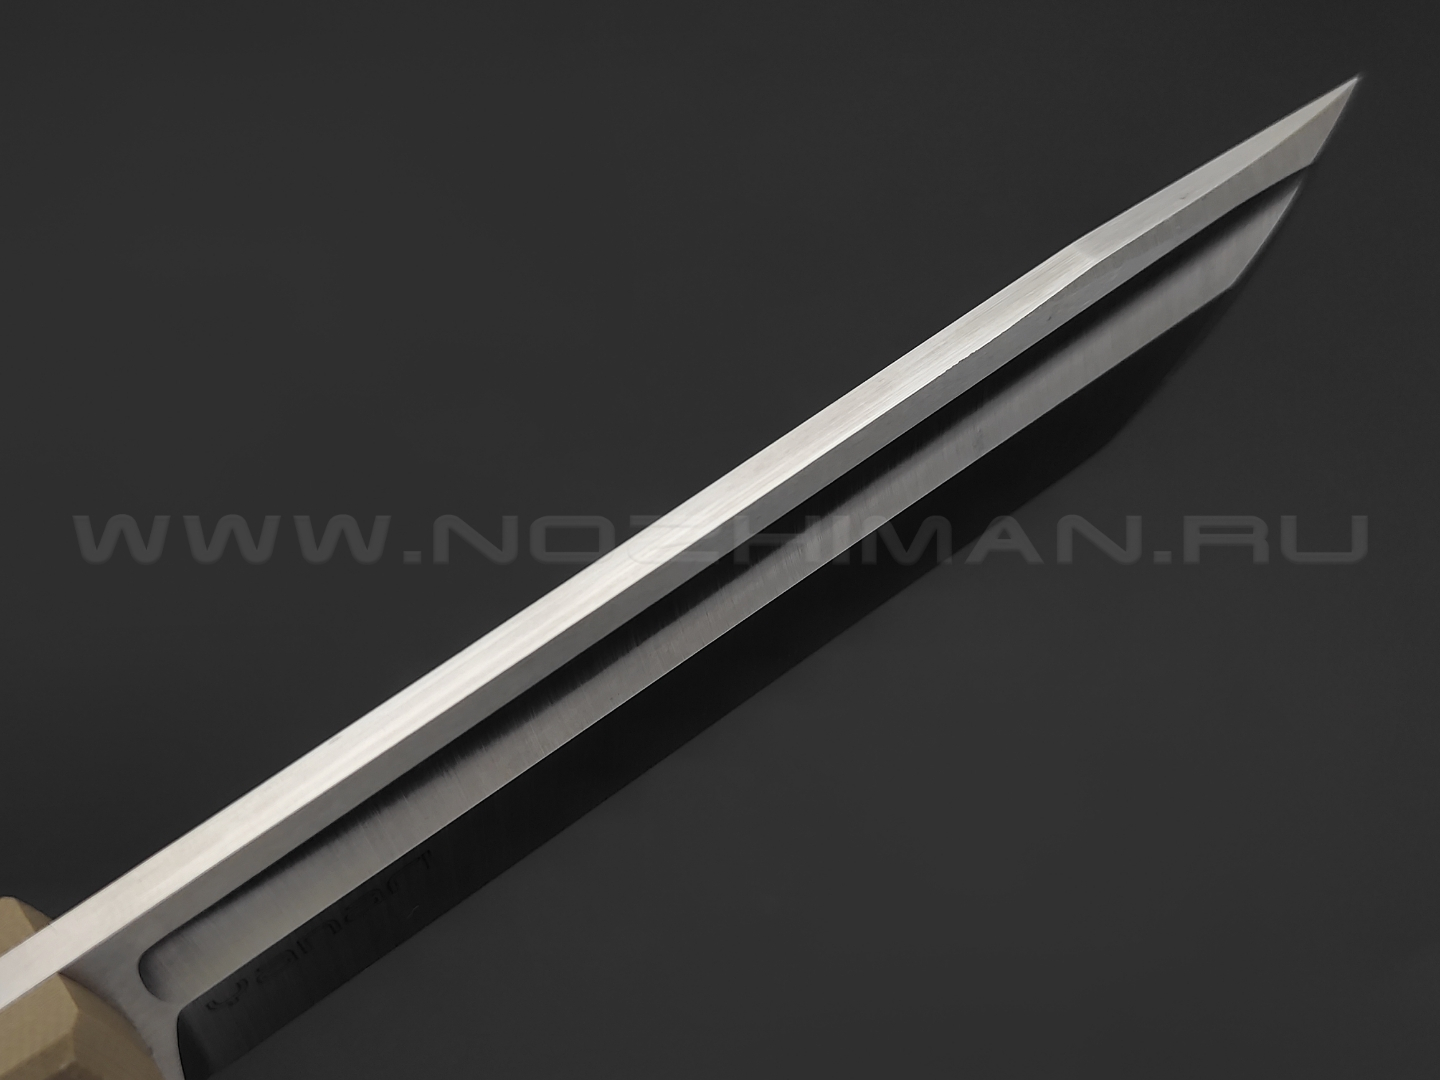 Нож Yanari большой сталь VG-10, рукоять G10 tan, ножны kydex tan